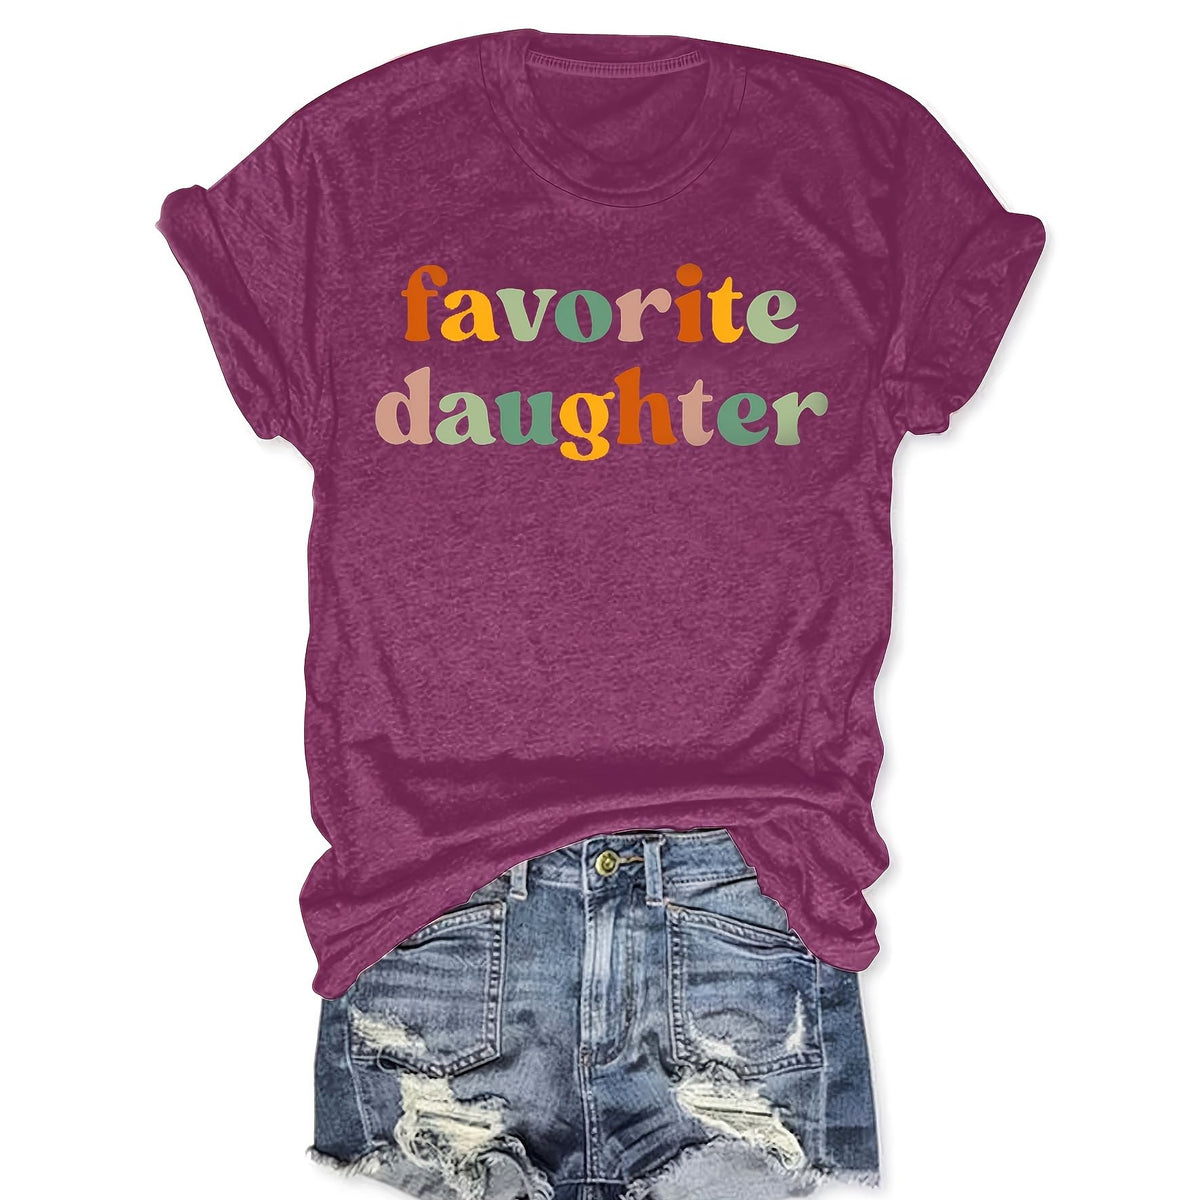 Favorite daughter T-shirt